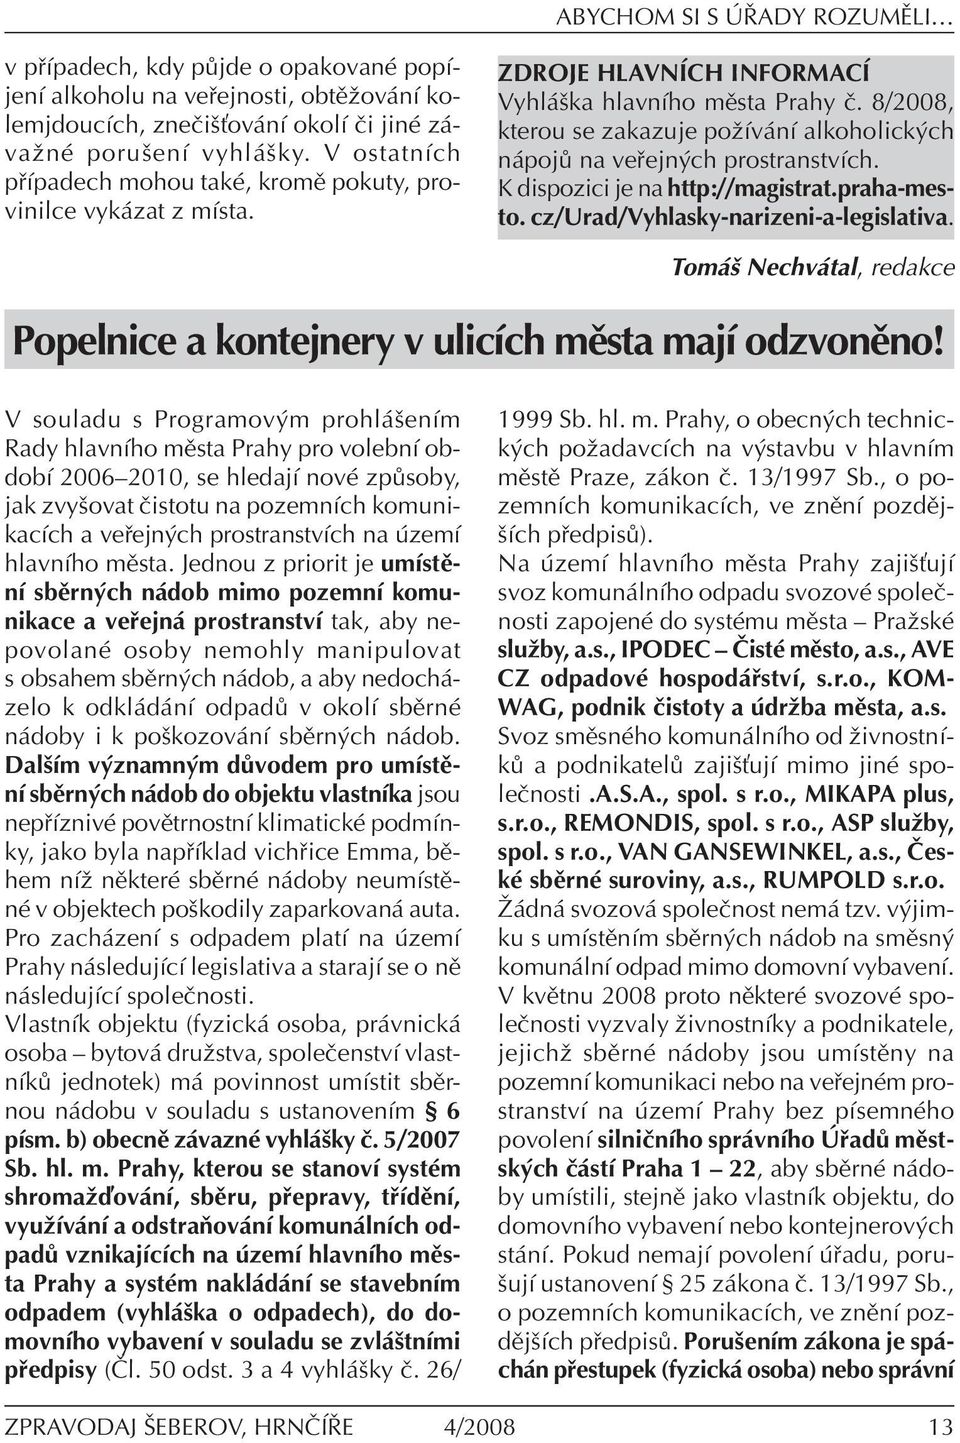 8/2008, kterou se zakazuje poûìv nì alkoholick ch n poj na ve ejn ch prostranstvìch. K dispozici je na http://magistrat.praha-mesto. cz/urad/vyhlasky-narizeni-a-legislativa.